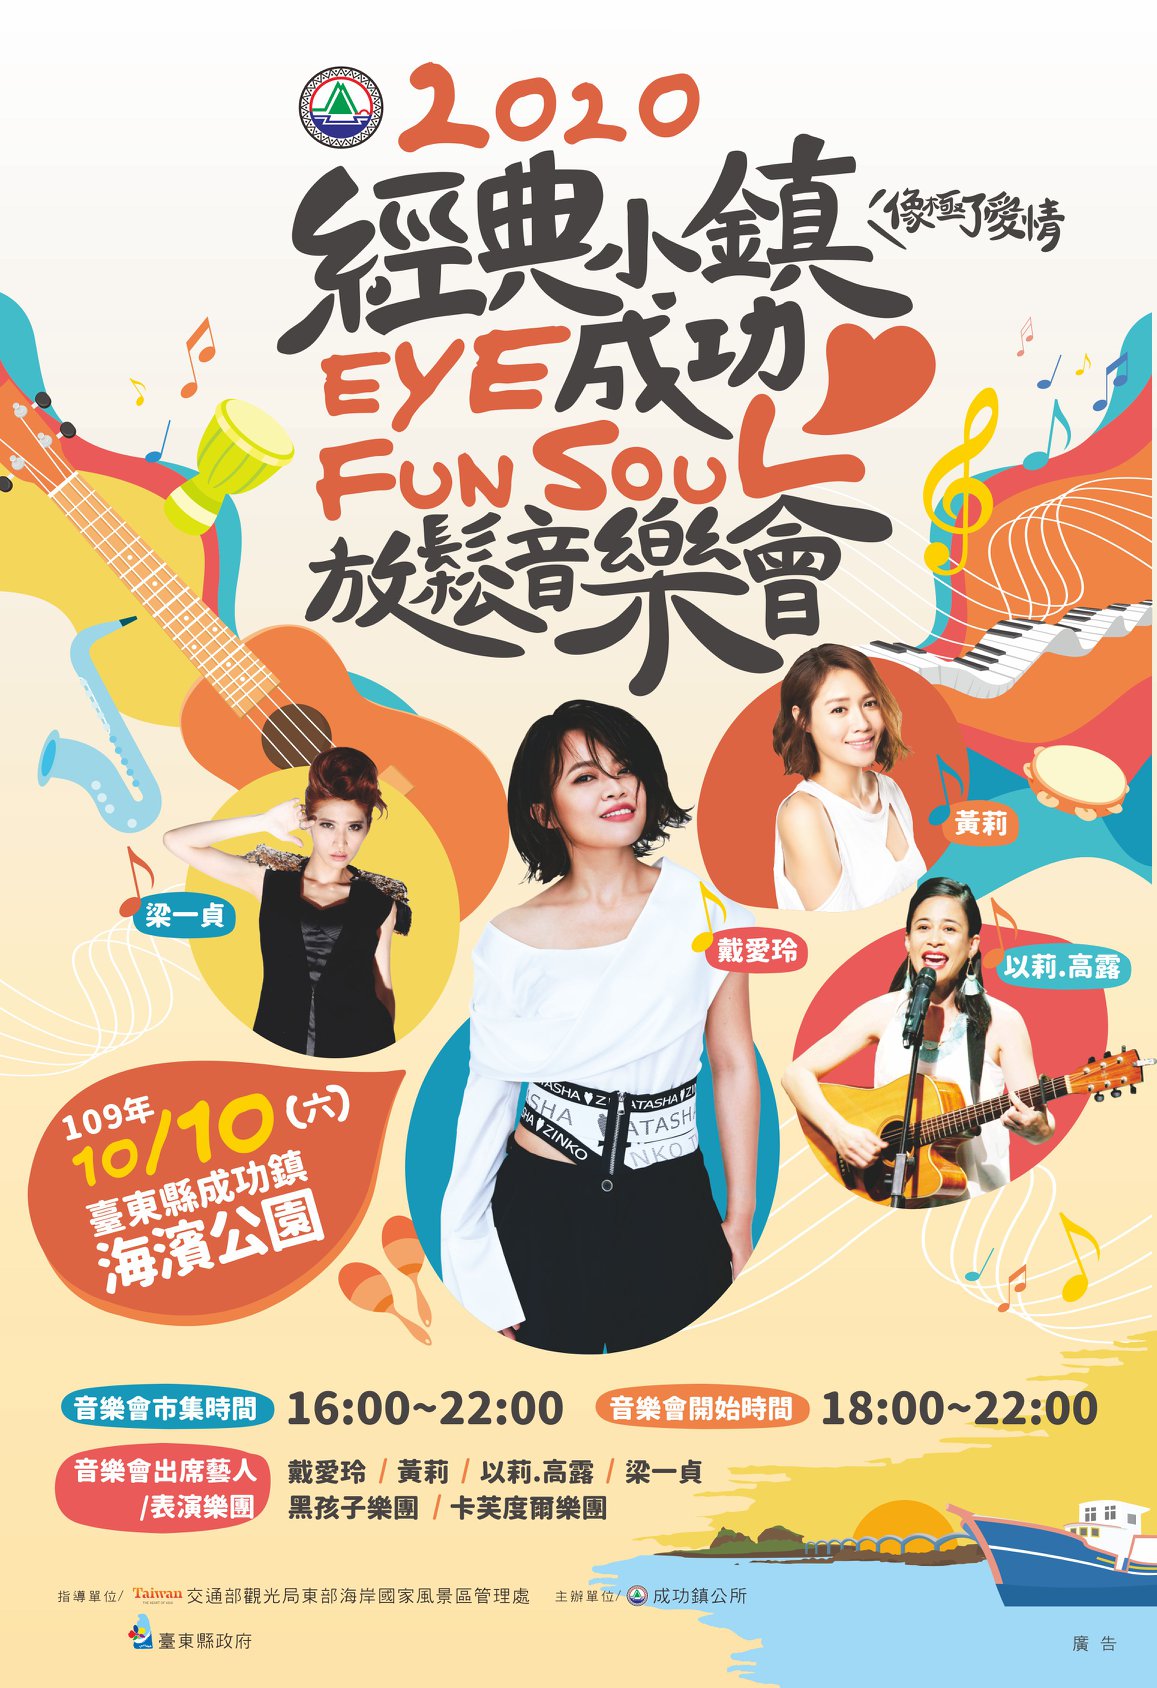 2020 台東成功經典小鎮eye成功Fun Soul 放鬆音樂會~台東民宿貓追熊住宿